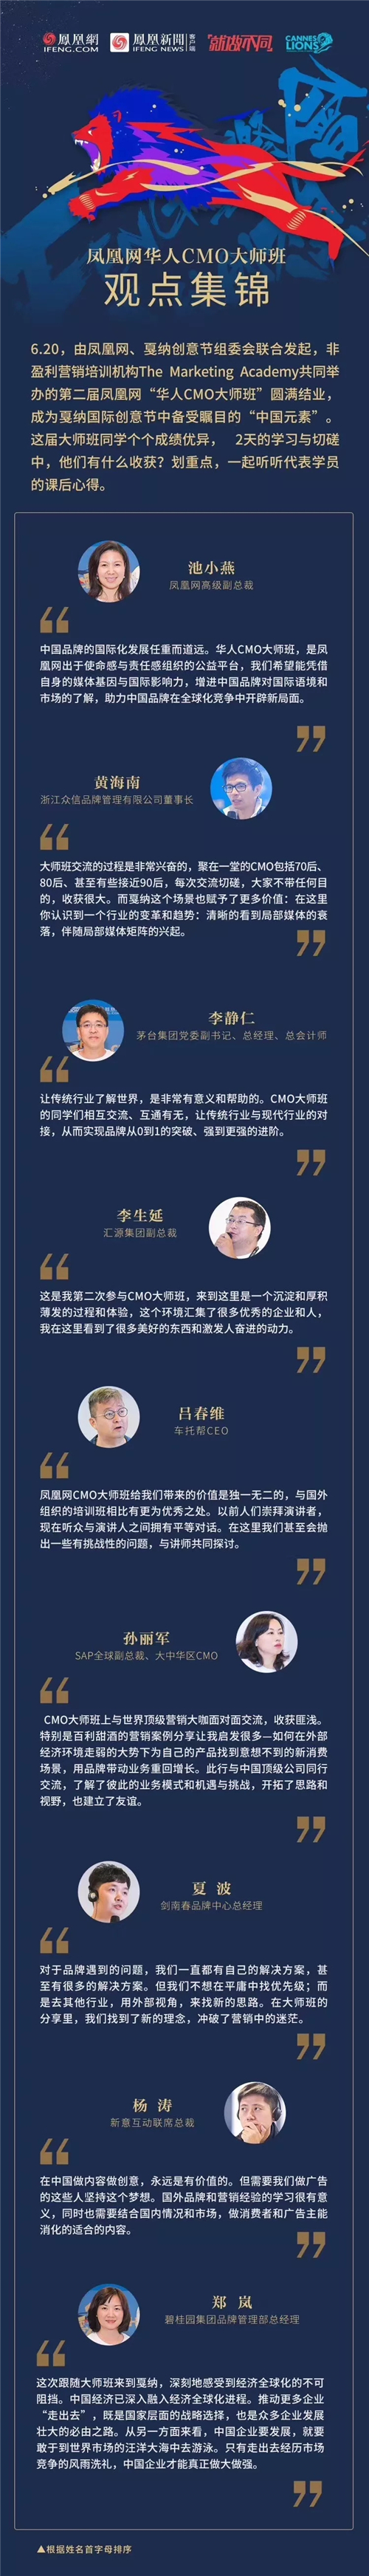 凤凰网华人CMO大师班观点集锦